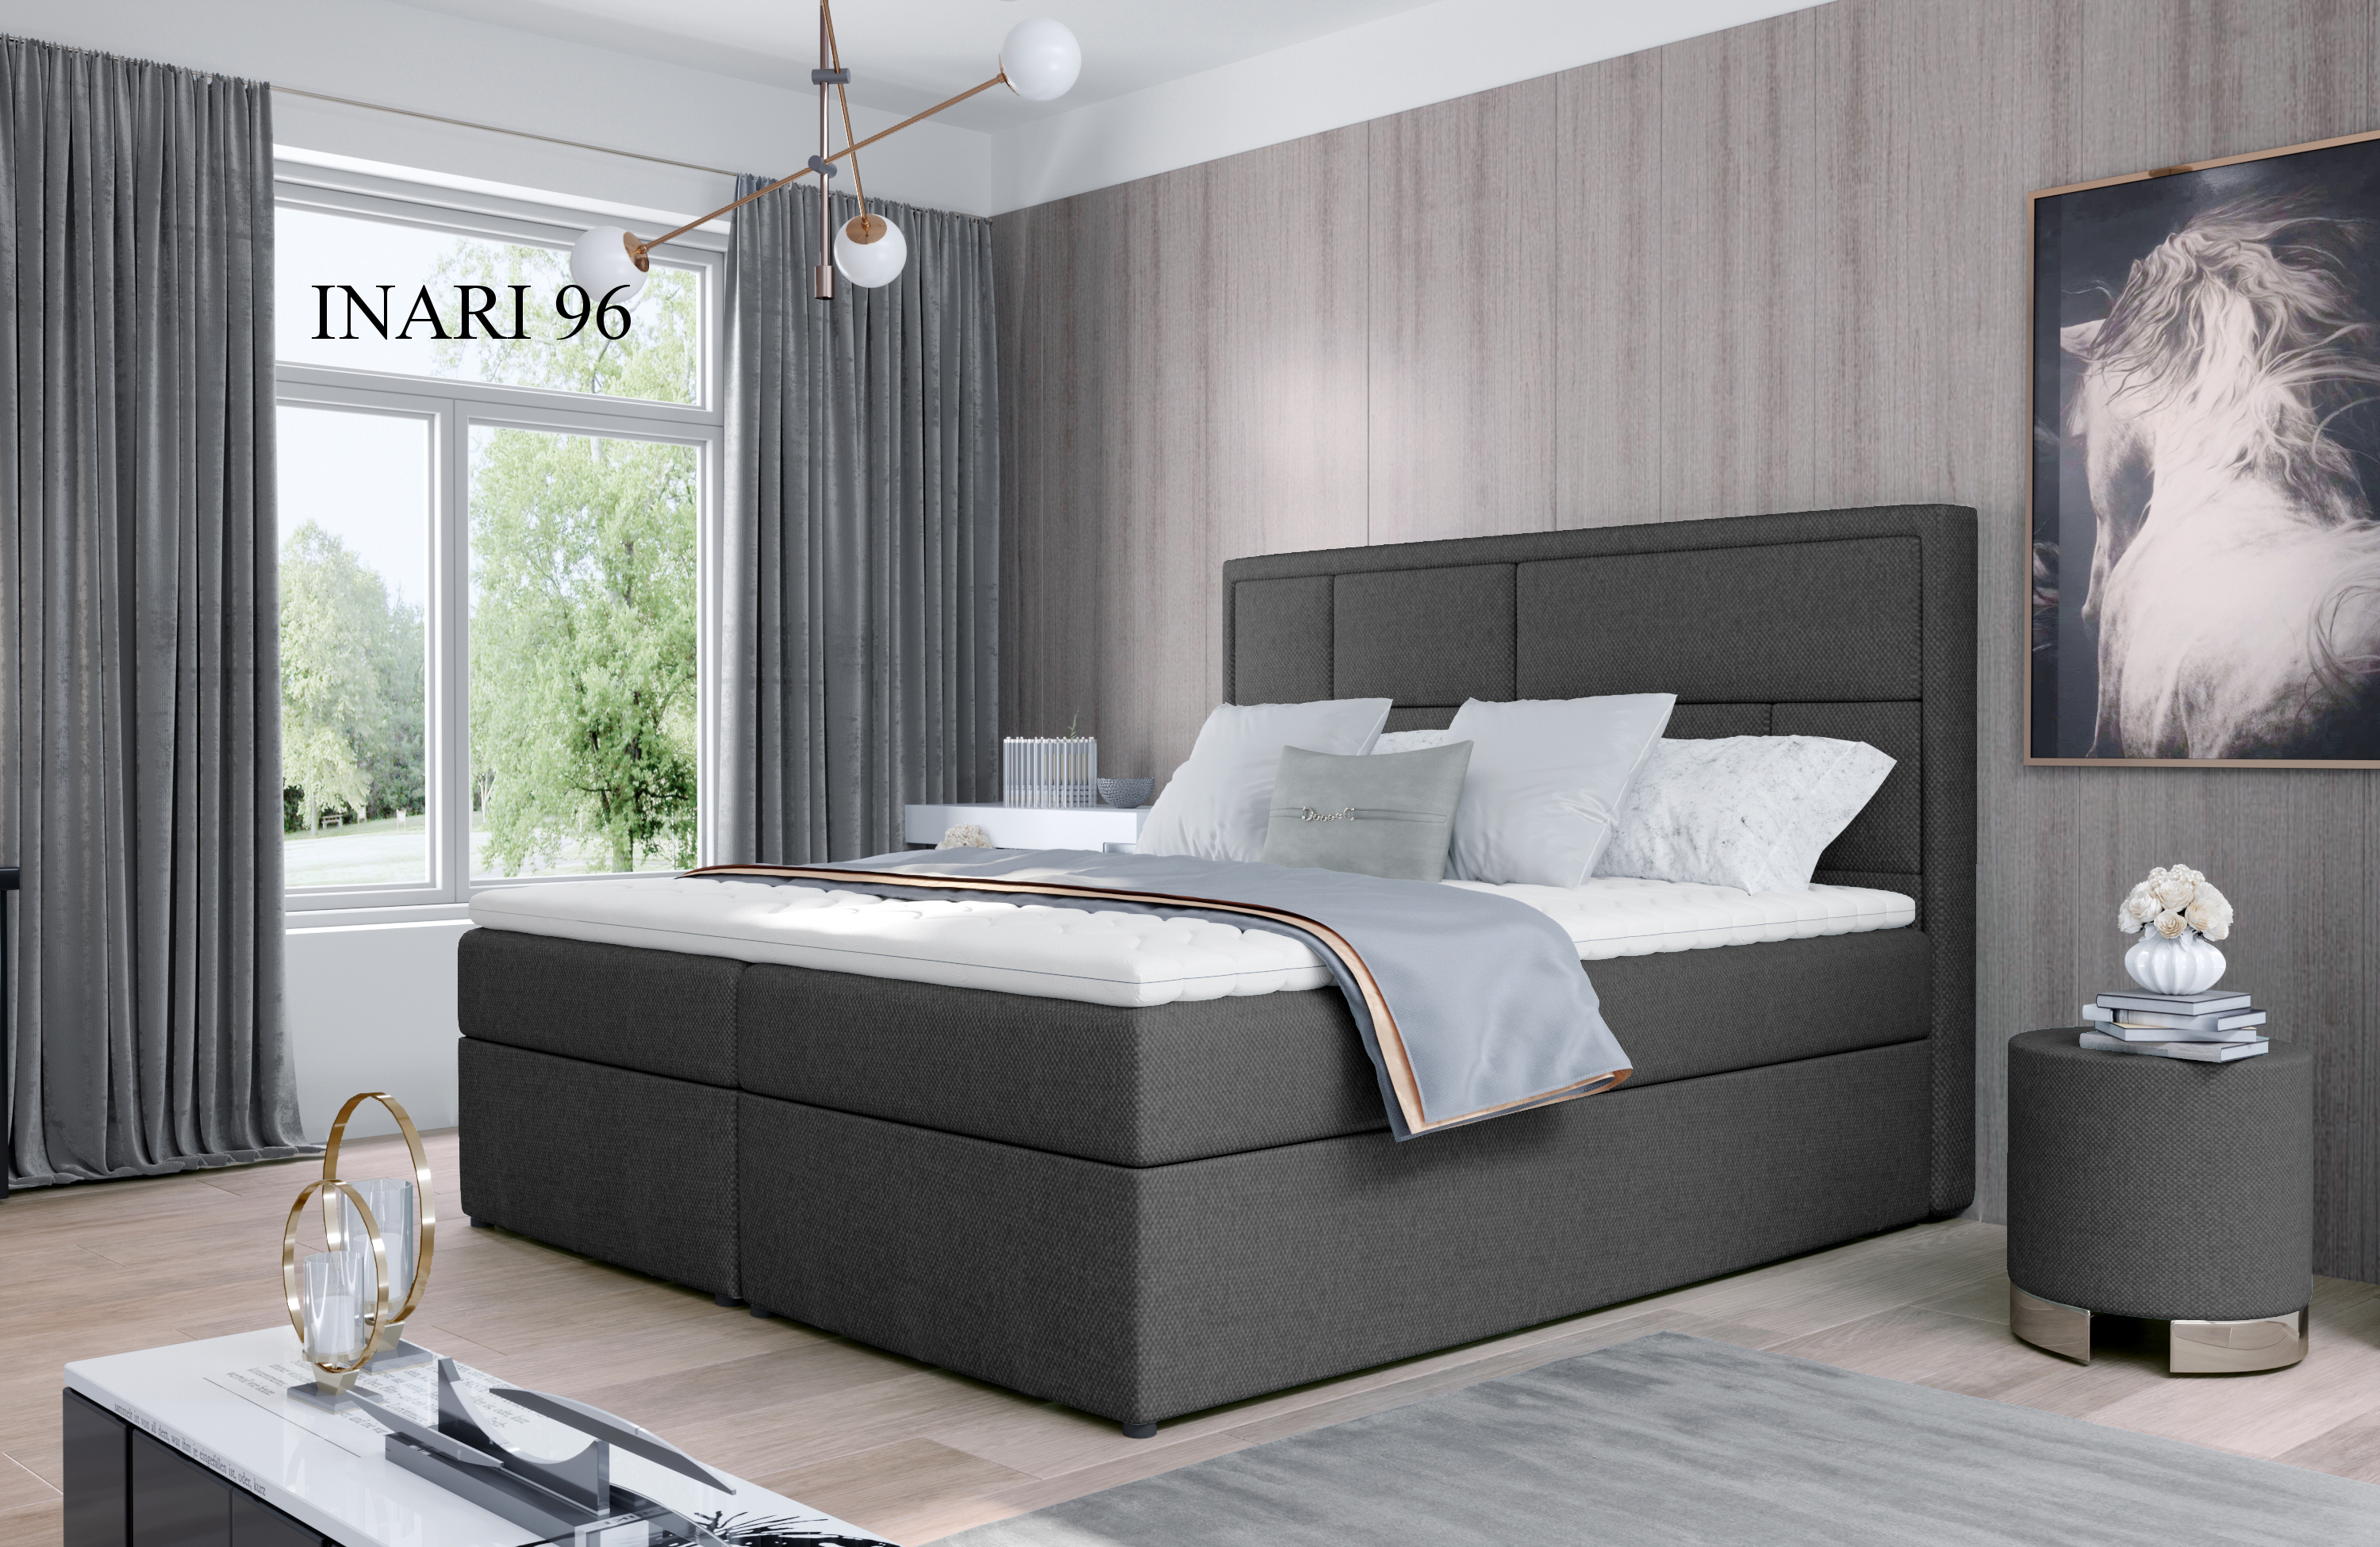 Čalouněná postel MERON Boxsprings 180 x 200 cm Provedení: Inarri 96